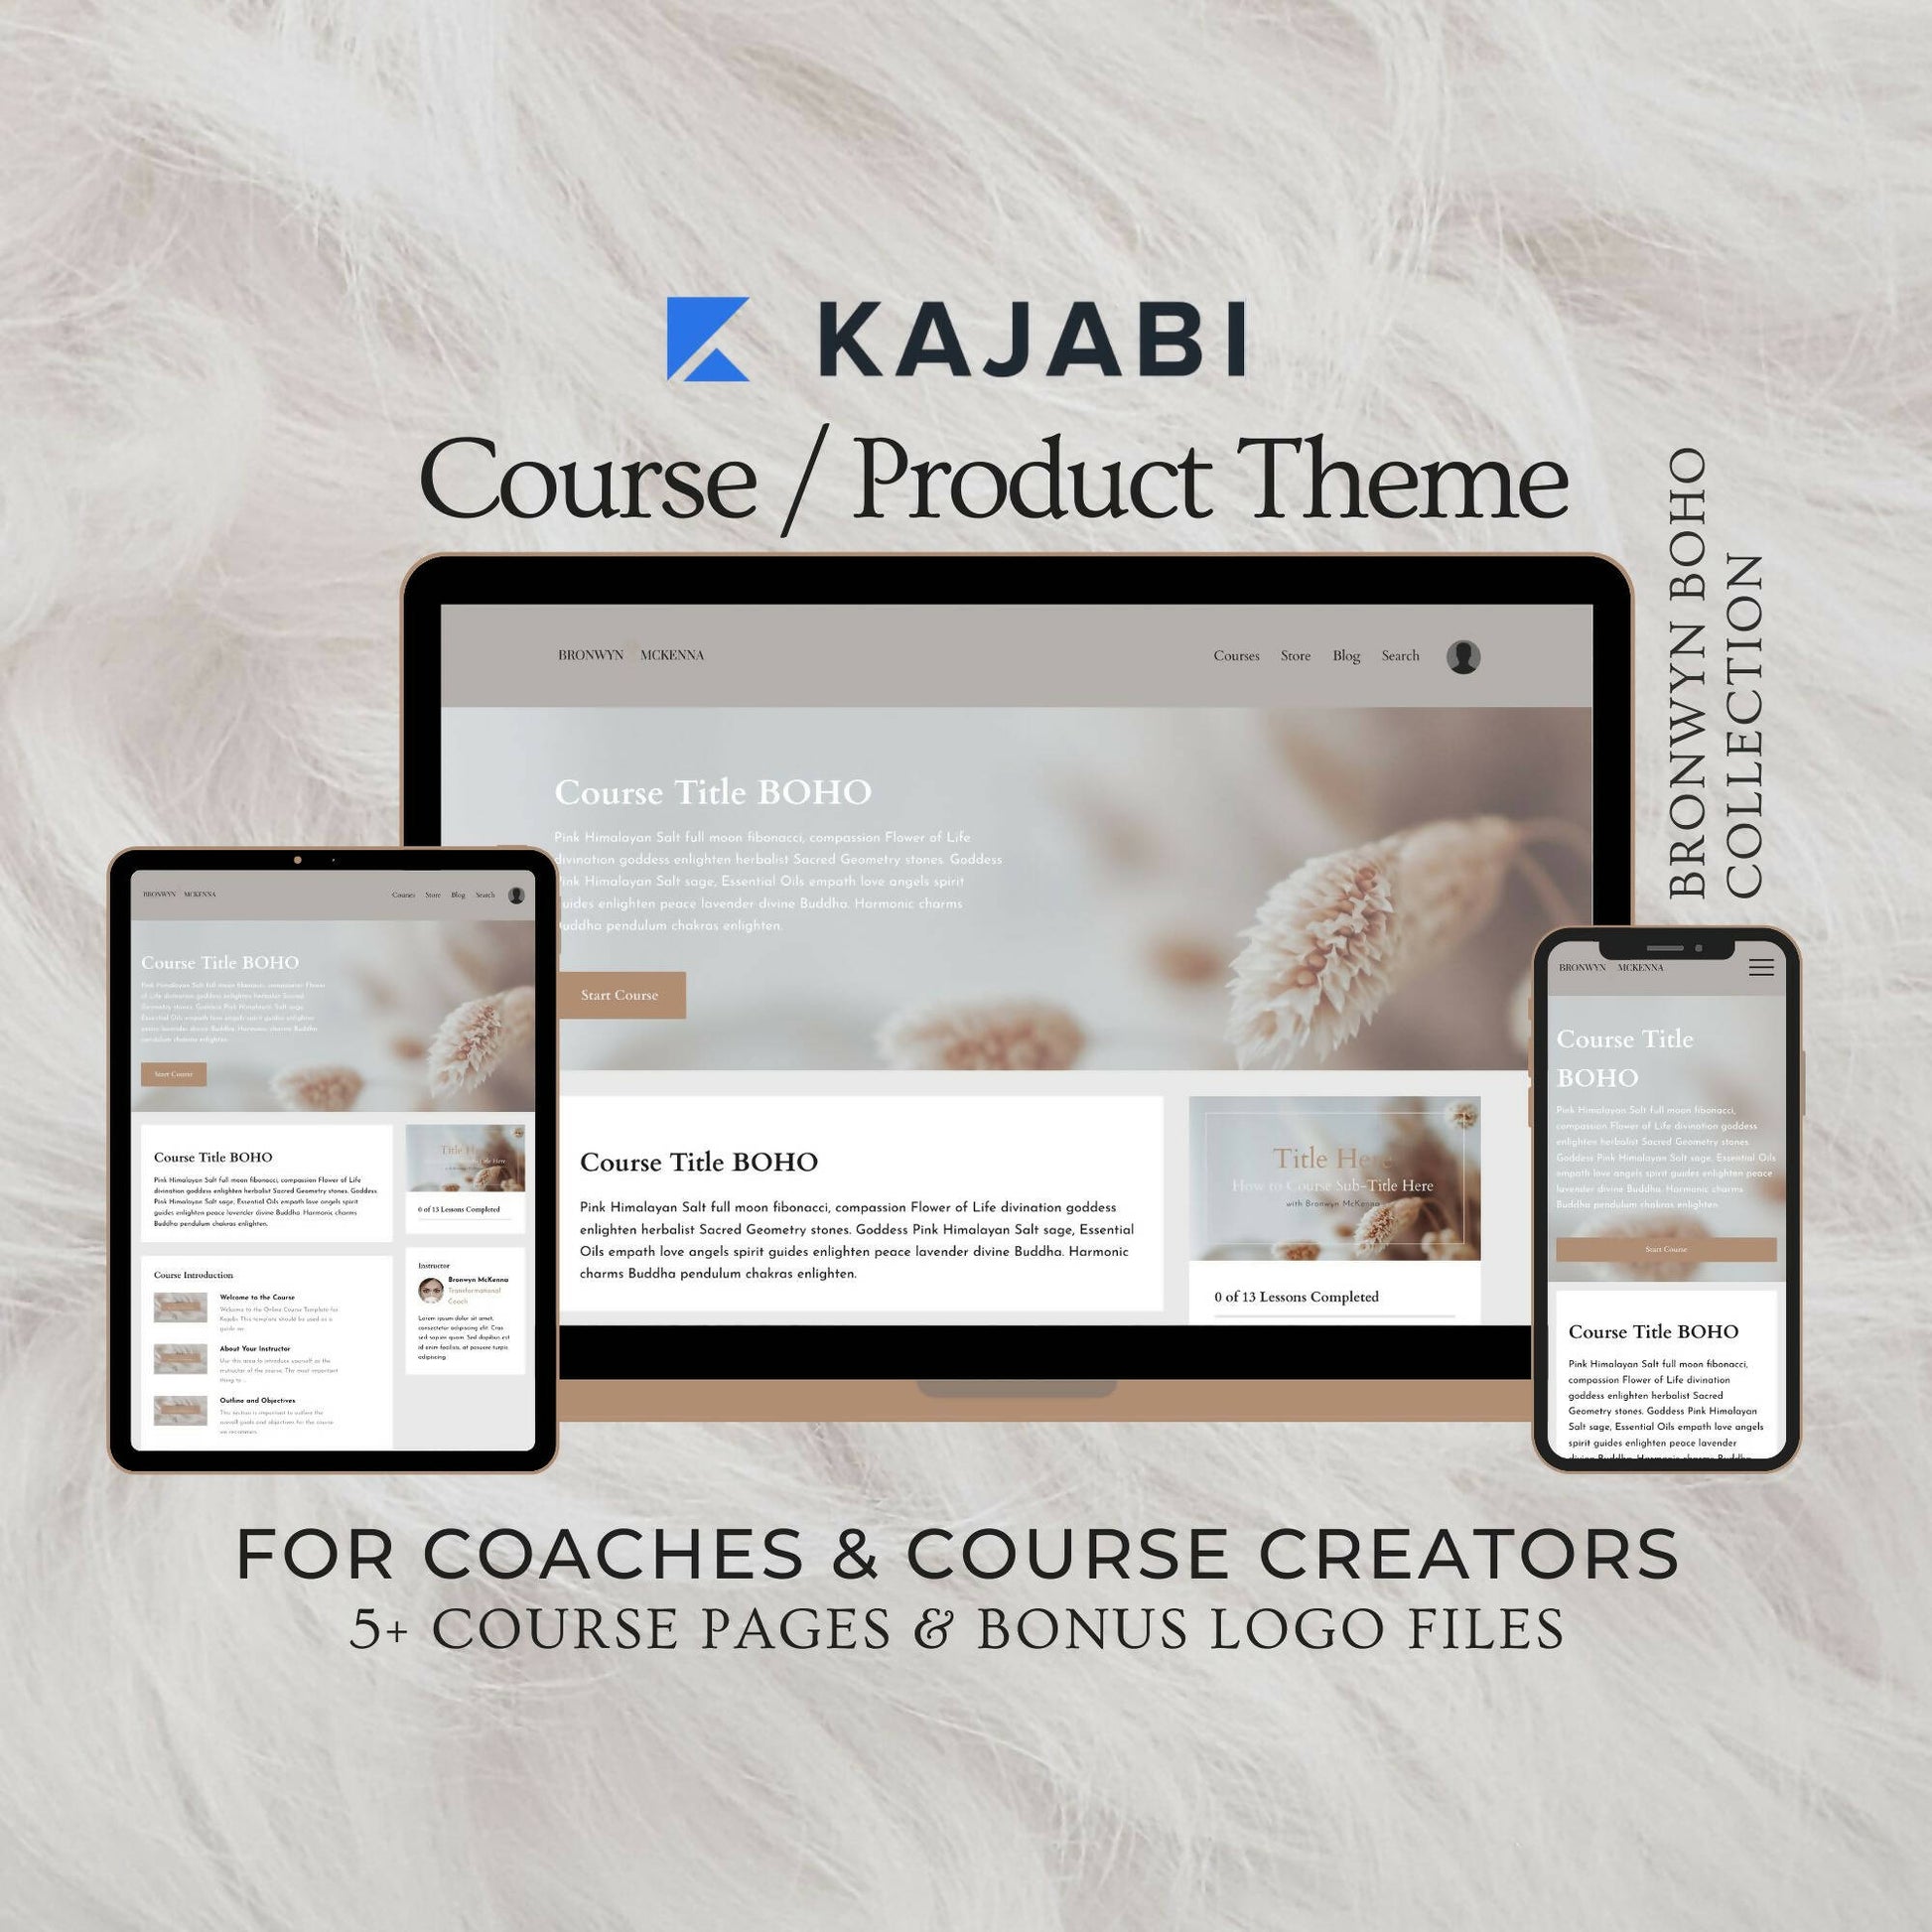 kajabi-course-theme-coach-course-creator01 (2)